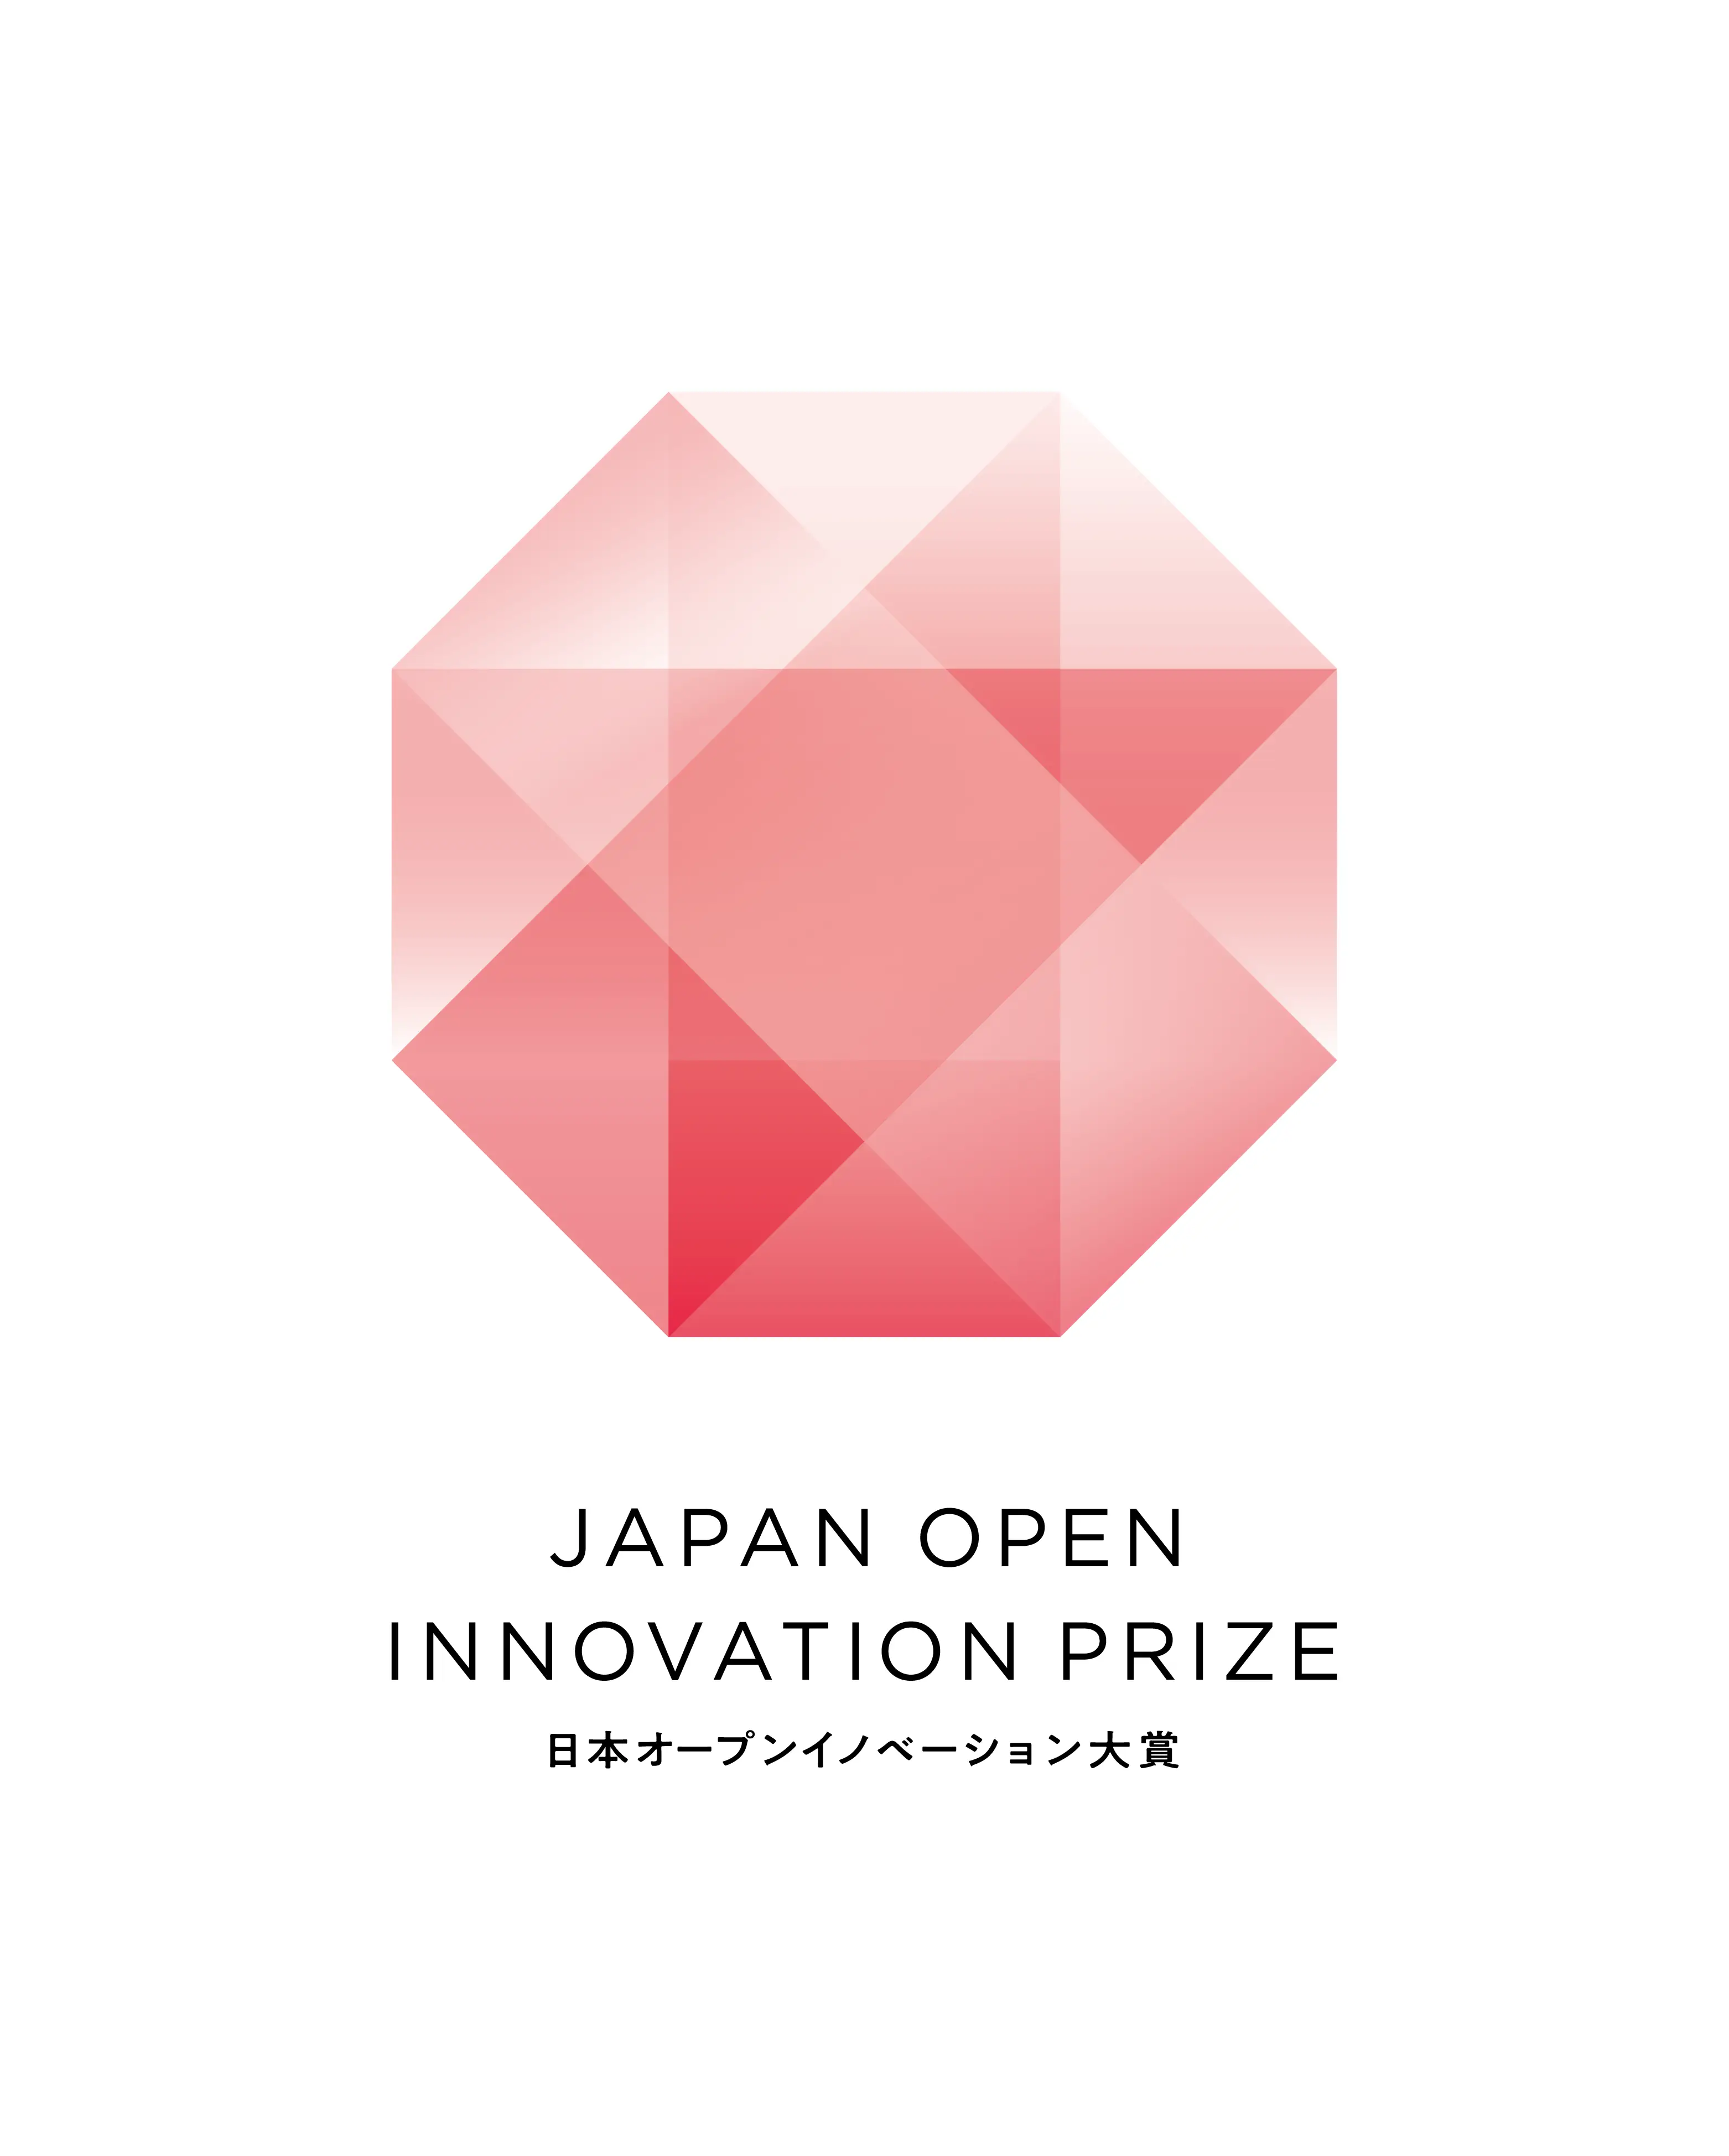 がん研究会・がん研有明病院とAIメディカルサービス、 内閣府主催の「第5回 日本オープンイノベーション大賞」で、 「日本学術会議会長賞」を受賞